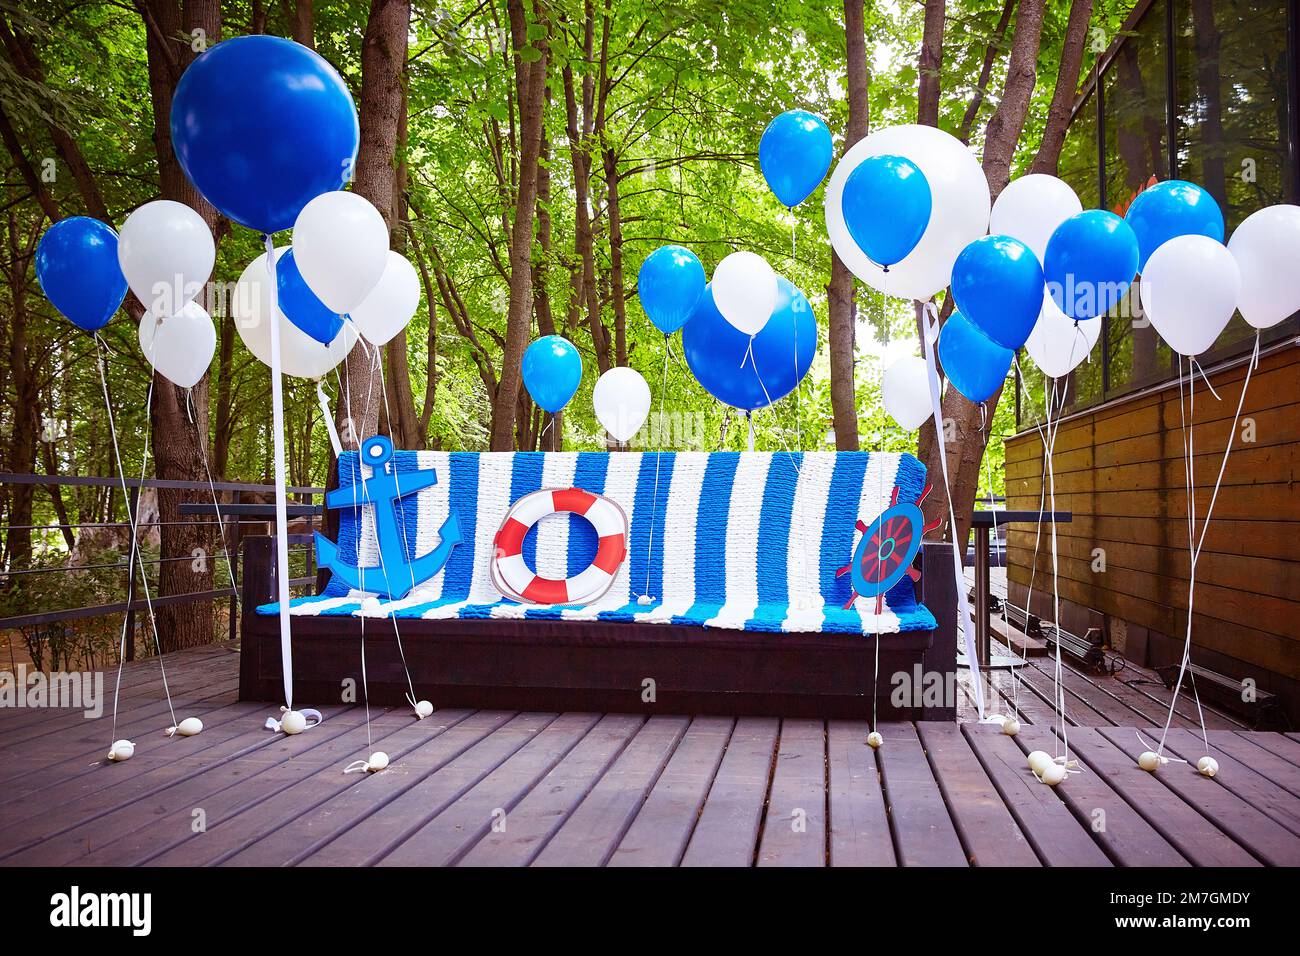 Fotozone im Marinestil in Blau und Weiß. Ballons und ein Sofa mit Karomuster sind für ein Geburtstagsfoto dekoriert. Stockfoto